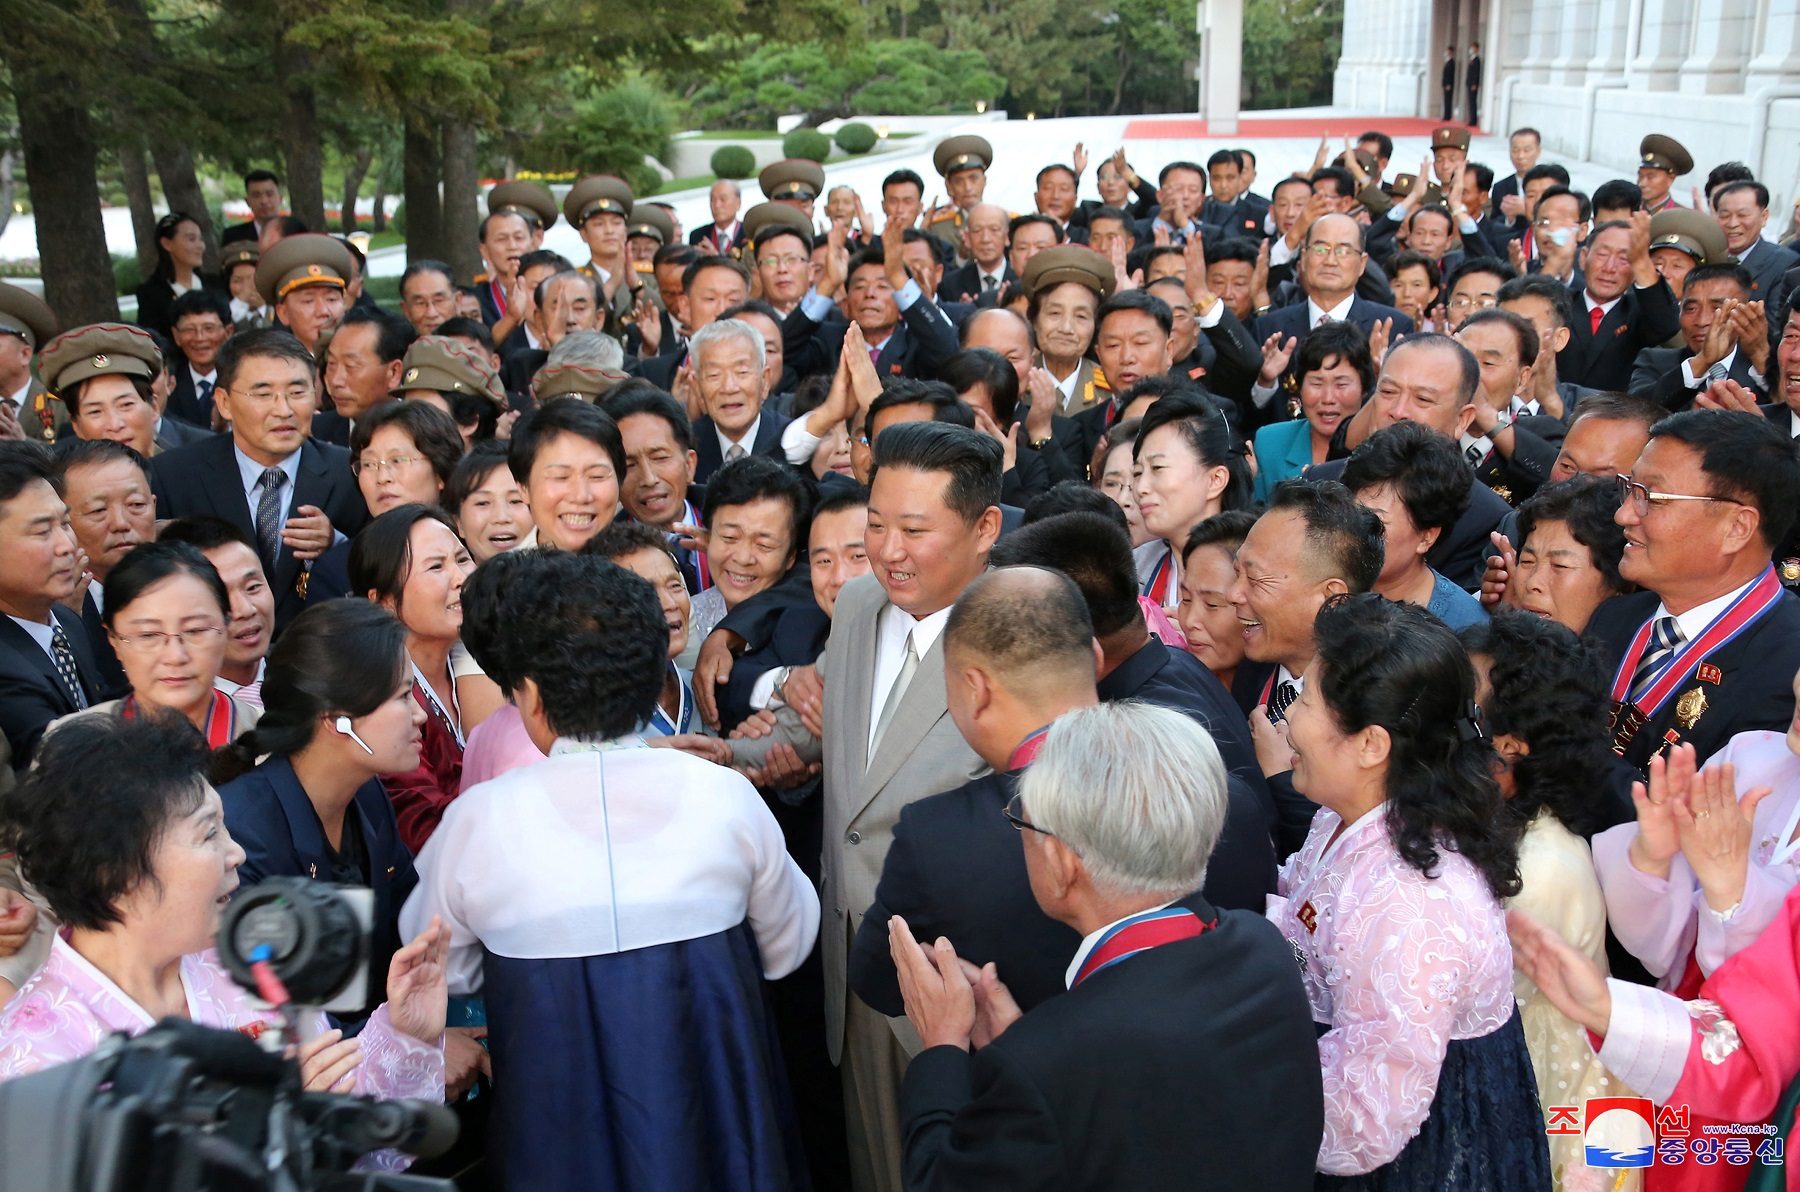 الزعيم الكوري الشمالي كيم جونغ أون/ رويترز